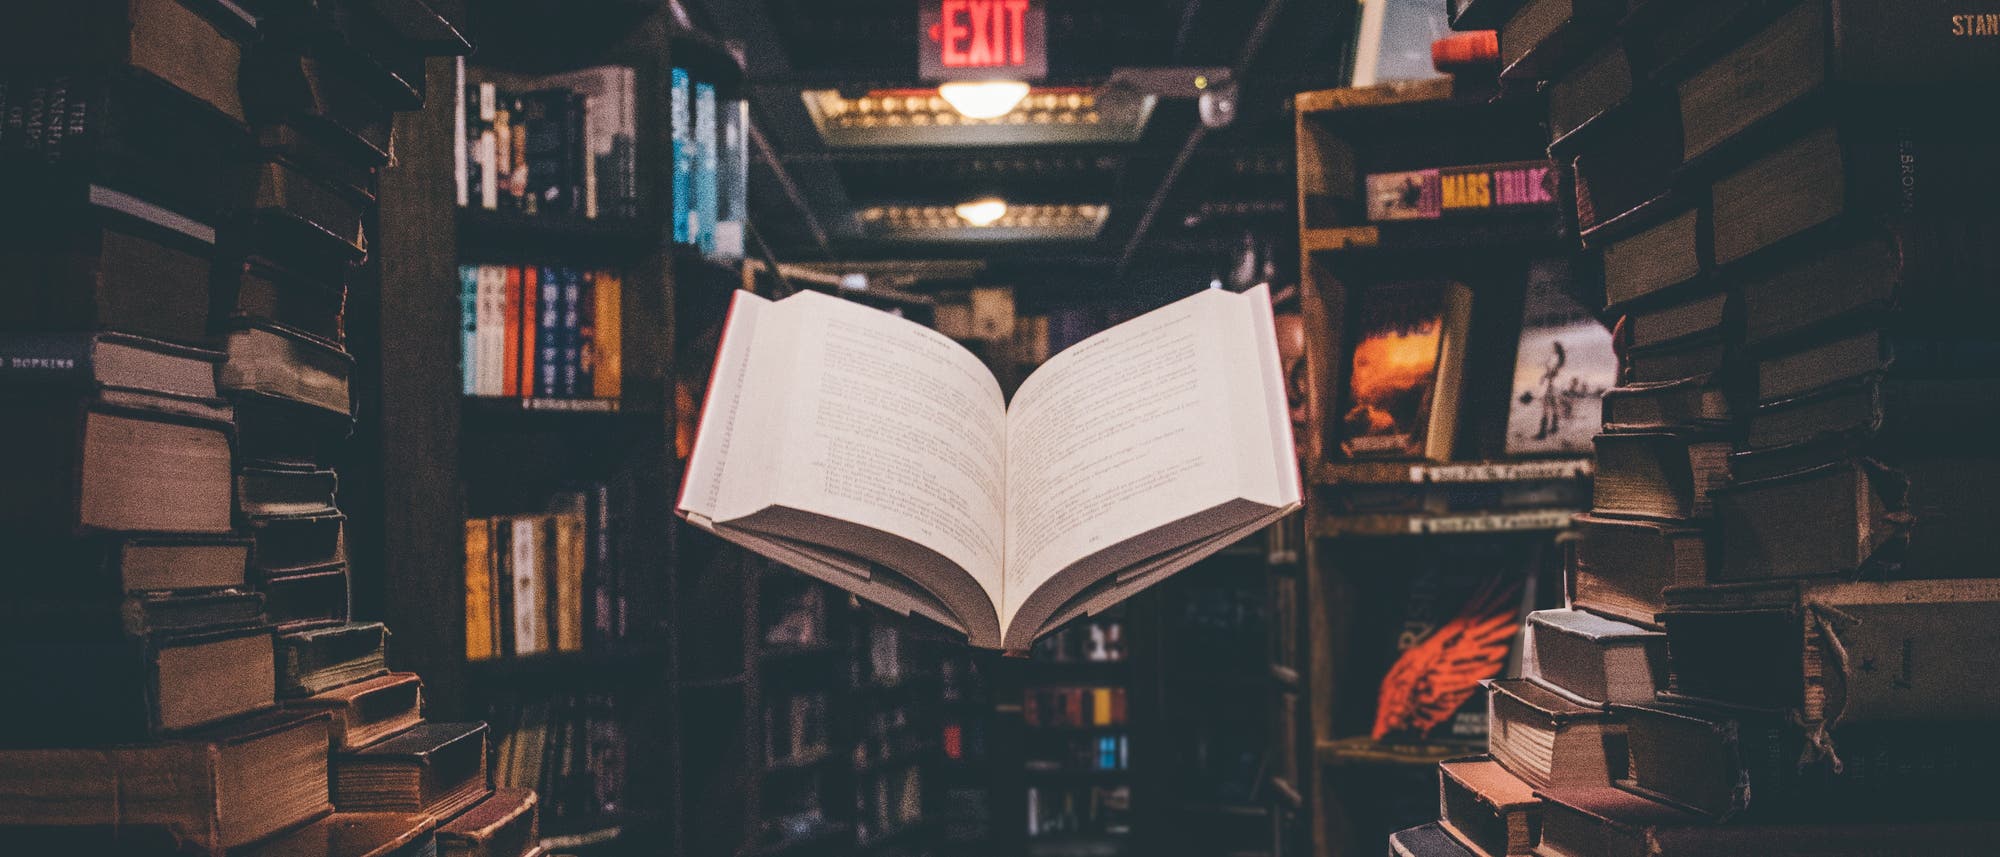 Schwebendes offenes Buch in einem Bücherfenster einer Bibliothek